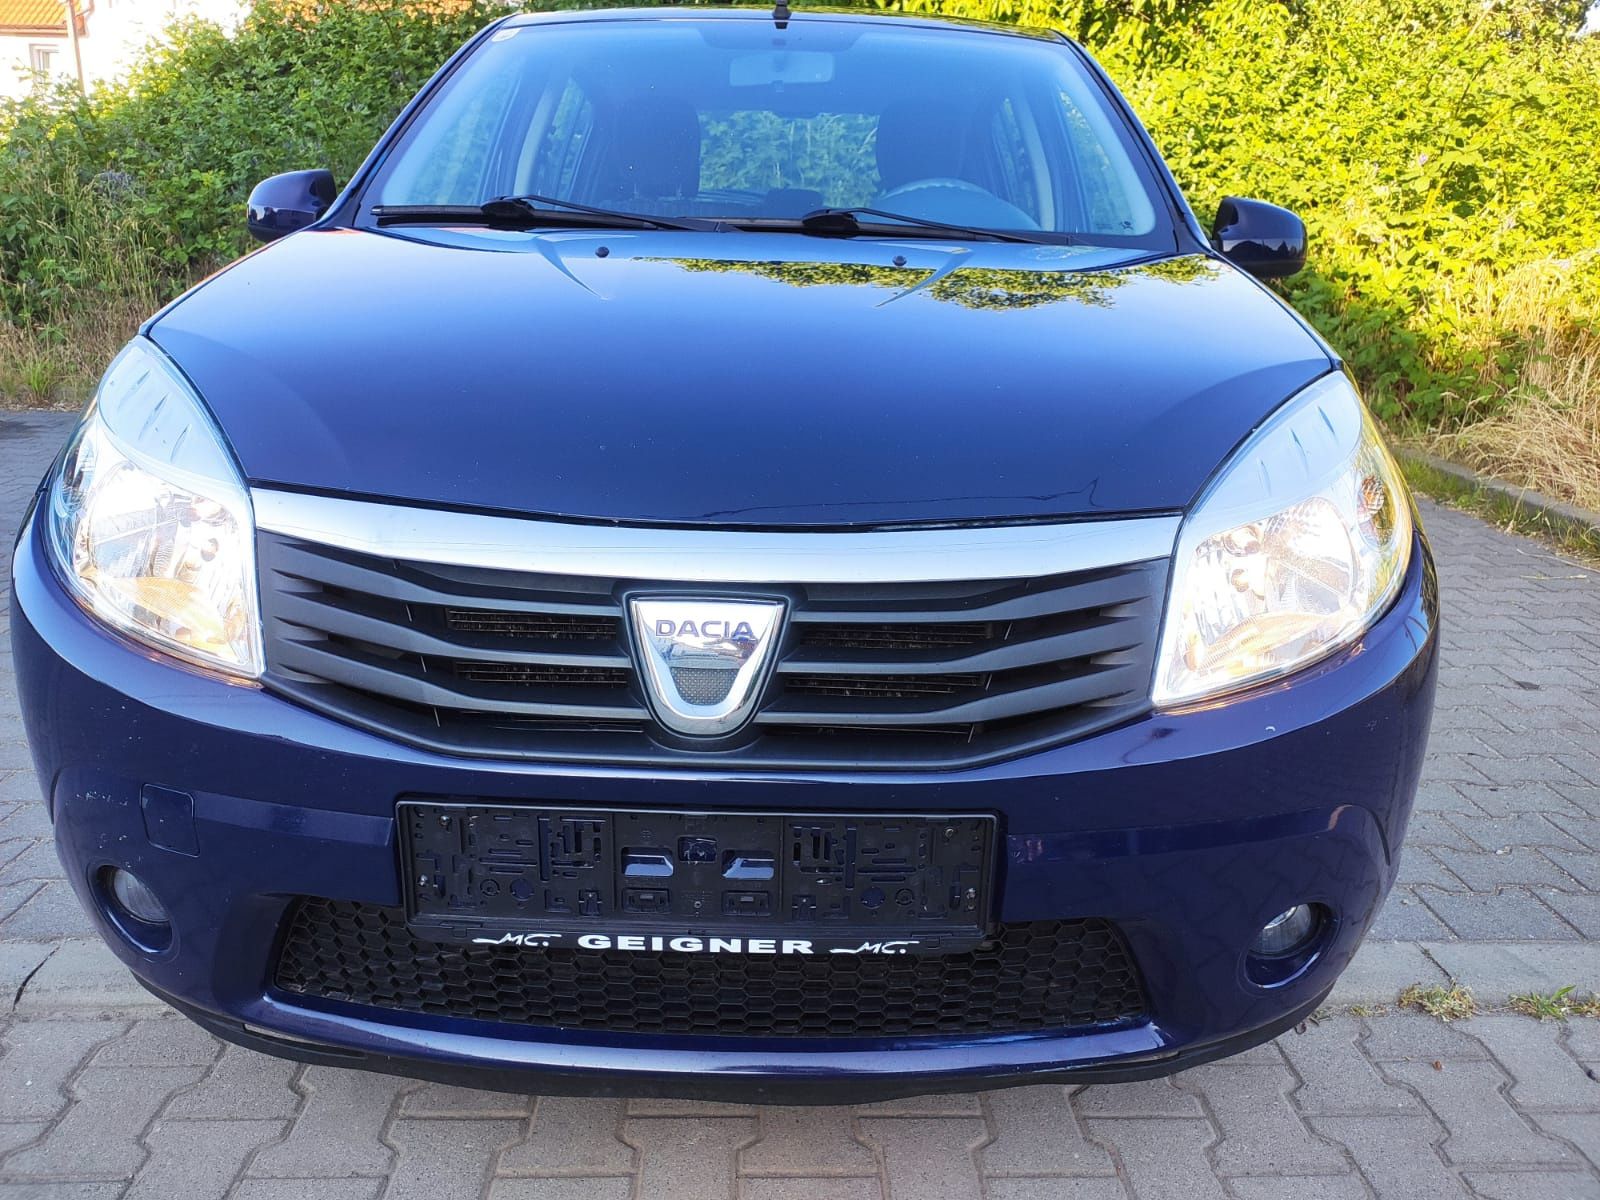 Dacia Sandero z klimatyzacją sterowaniem mediami z kierownicy ,zadbana